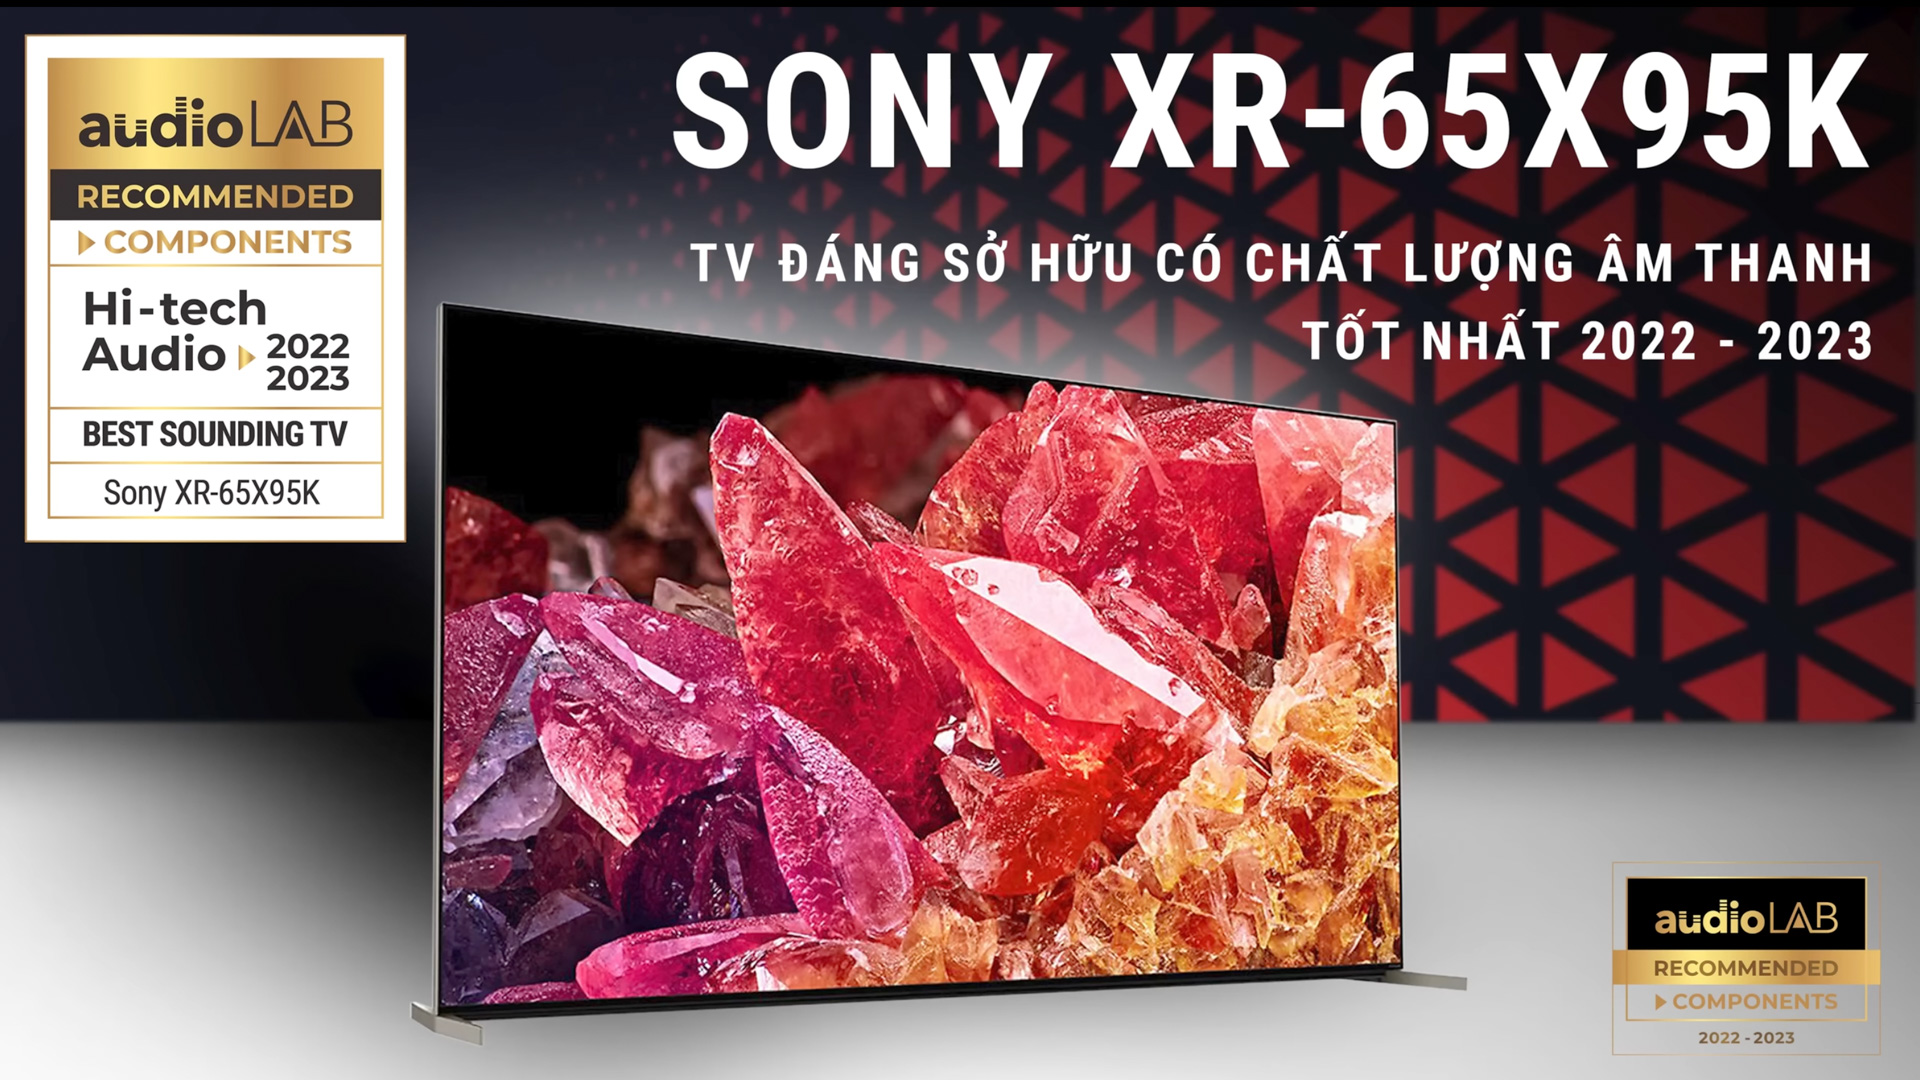 [Recommended TV Audio] Sony XR-65X95K – TV đáng sở hữu có chất lượng âm thanh tốt nhất 2022 - 2023